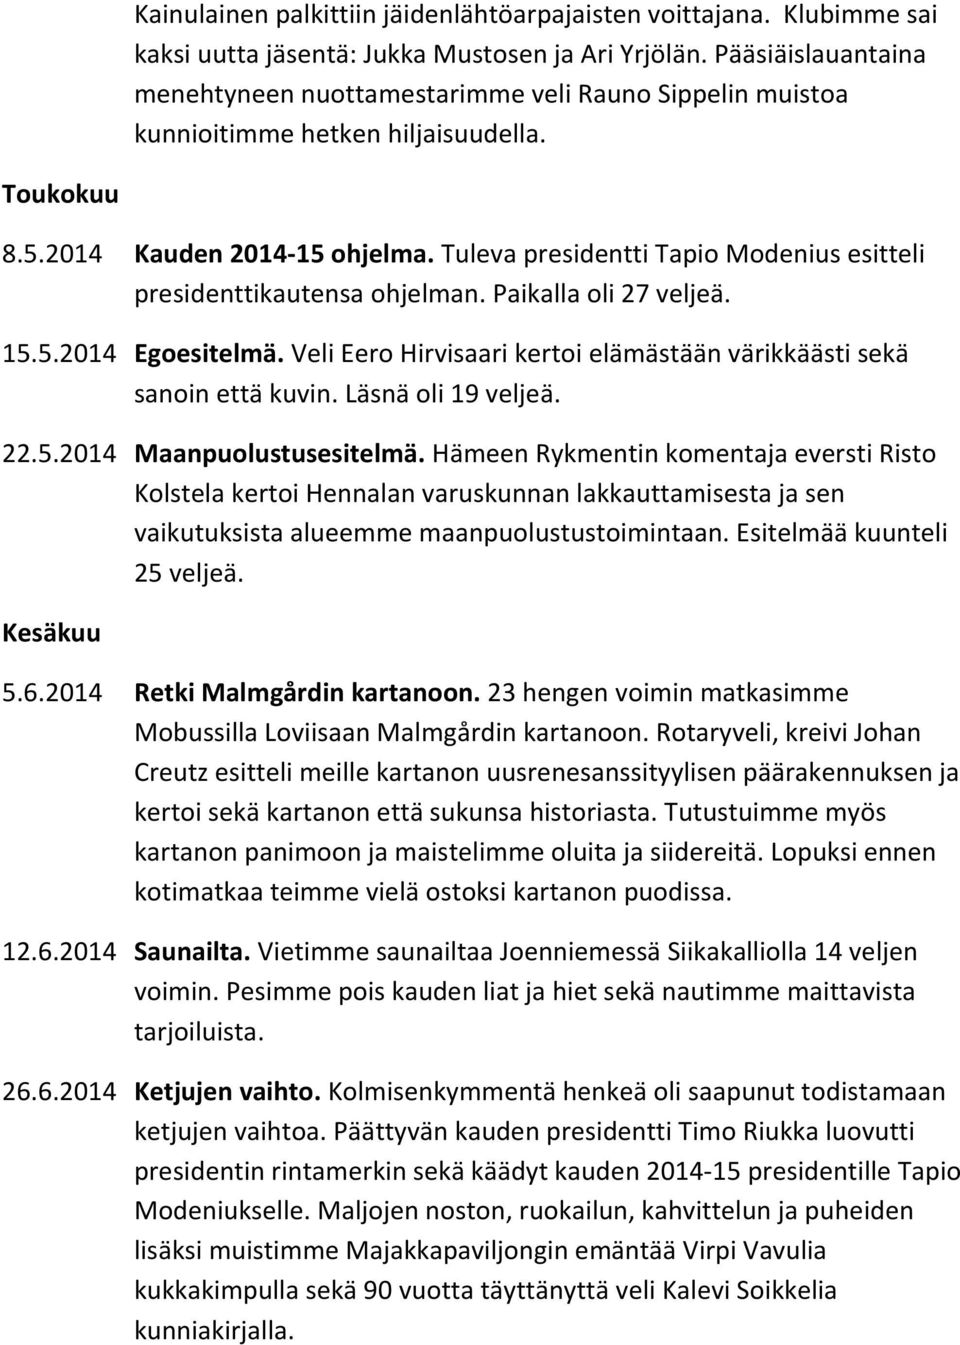 Tuleva presidentti Tapio Modenius esitteli presidenttikautensa ohjelman. Paikalla oli 27 veljeä. 15.5.2014 Egoesitelmä. Veli Eero Hirvisaari kertoi elämästään värikkäästi sekä sanoin että kuvin.